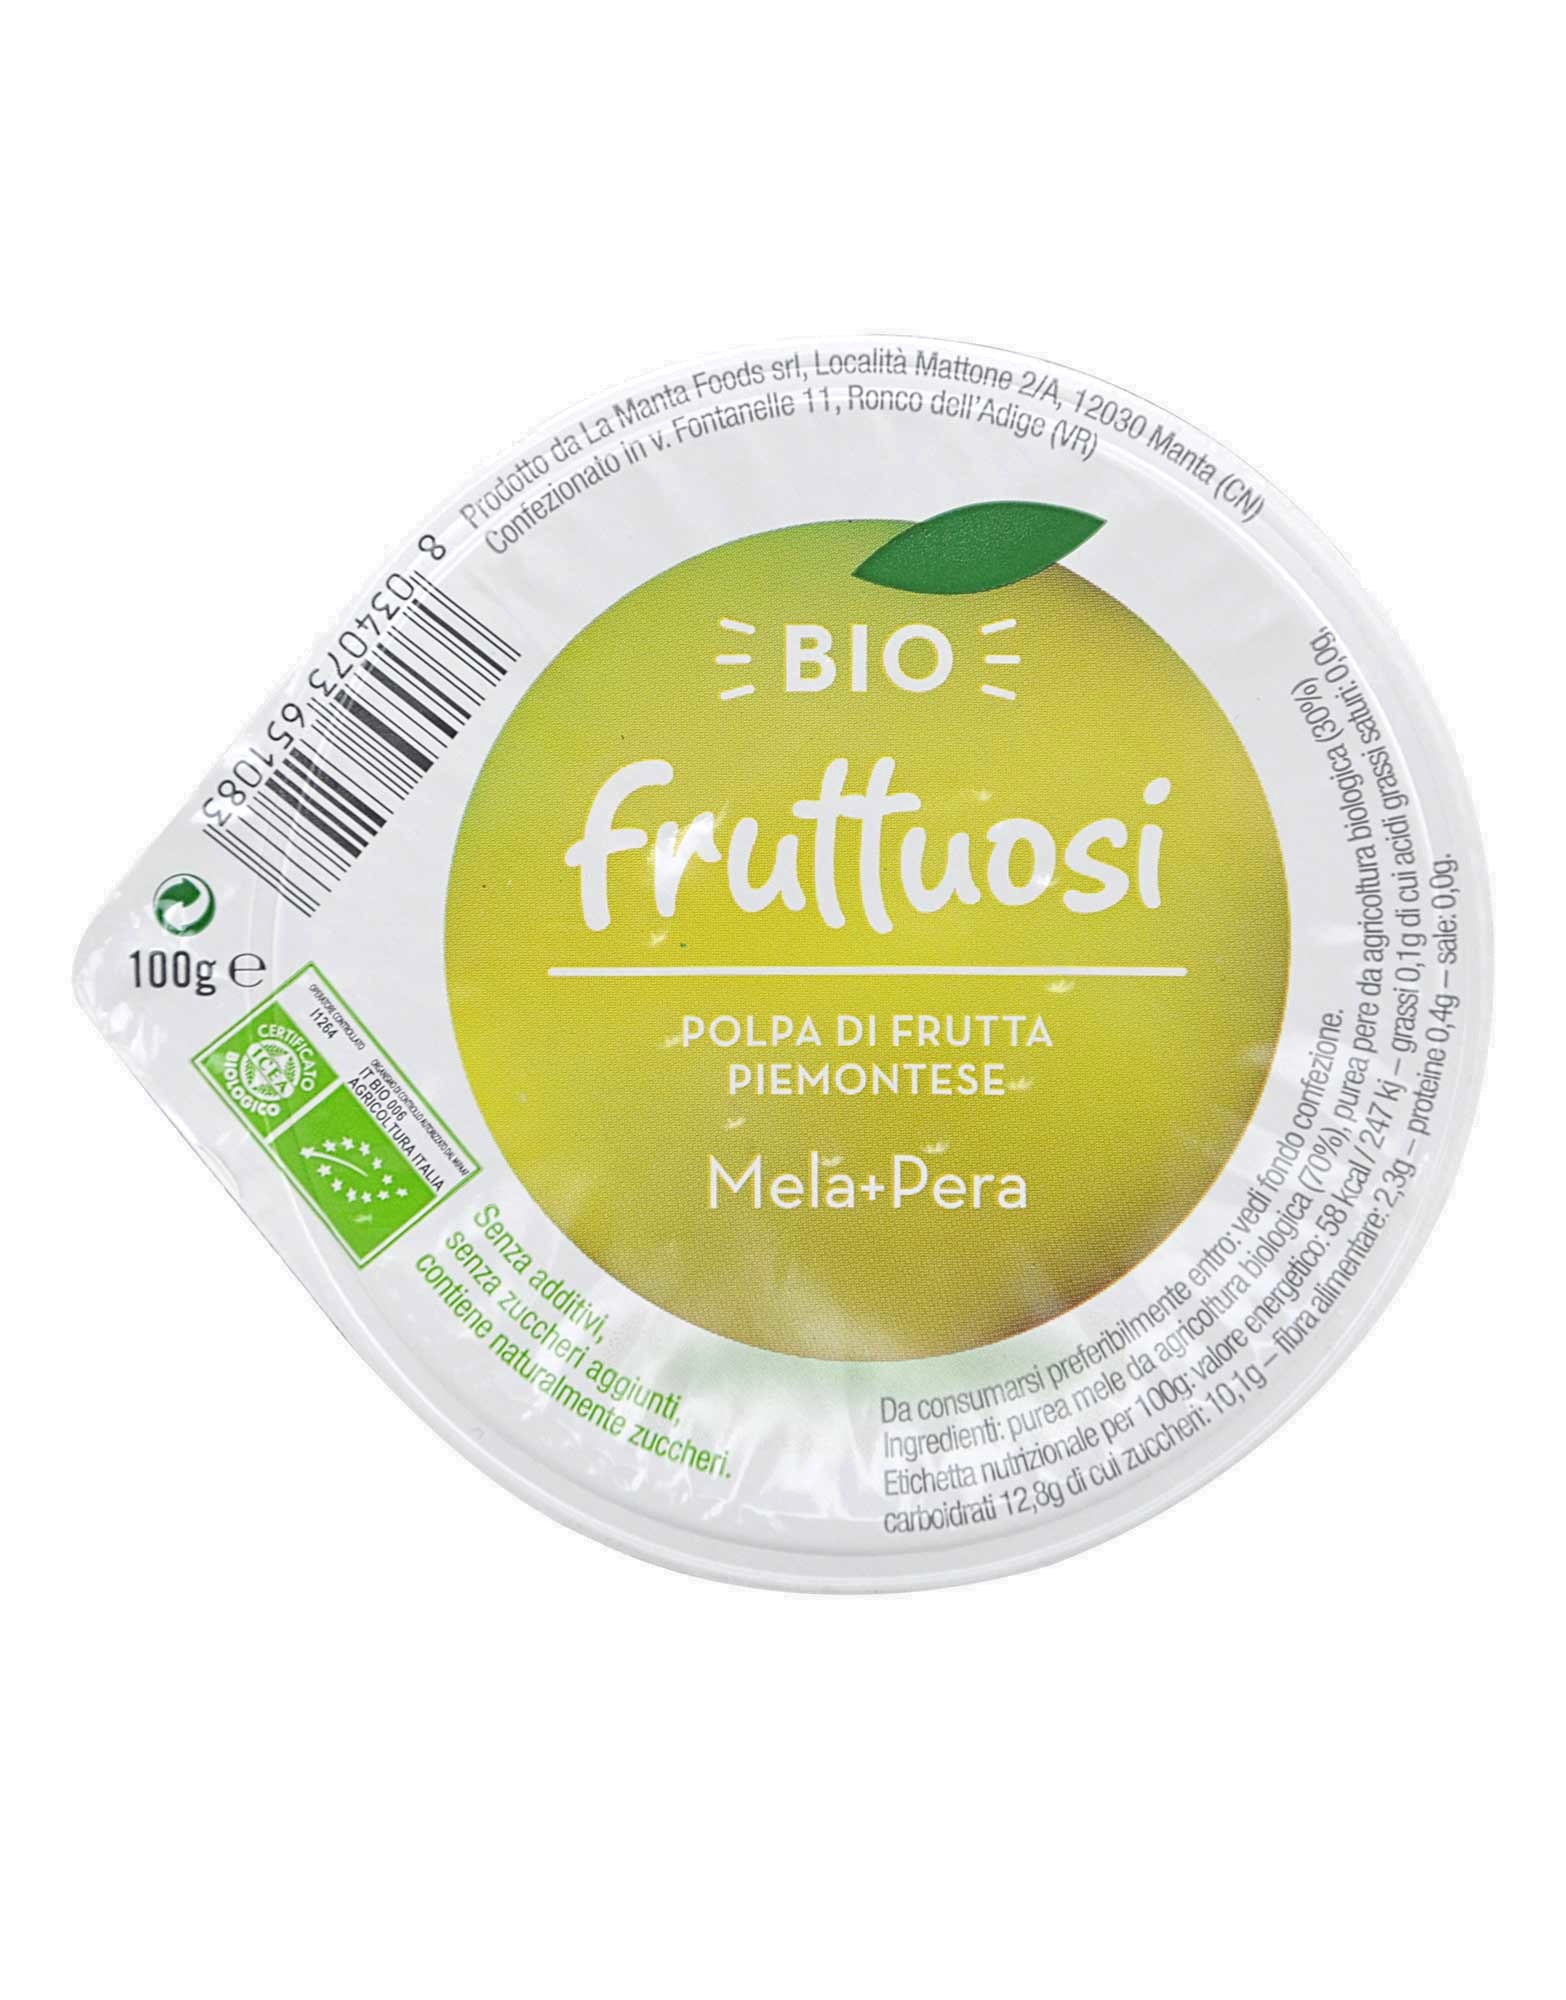 Bio Fruttuosi - Polpa di Frutta Piemontese - Mela + Pera di Fior di loto,  100 grammi 